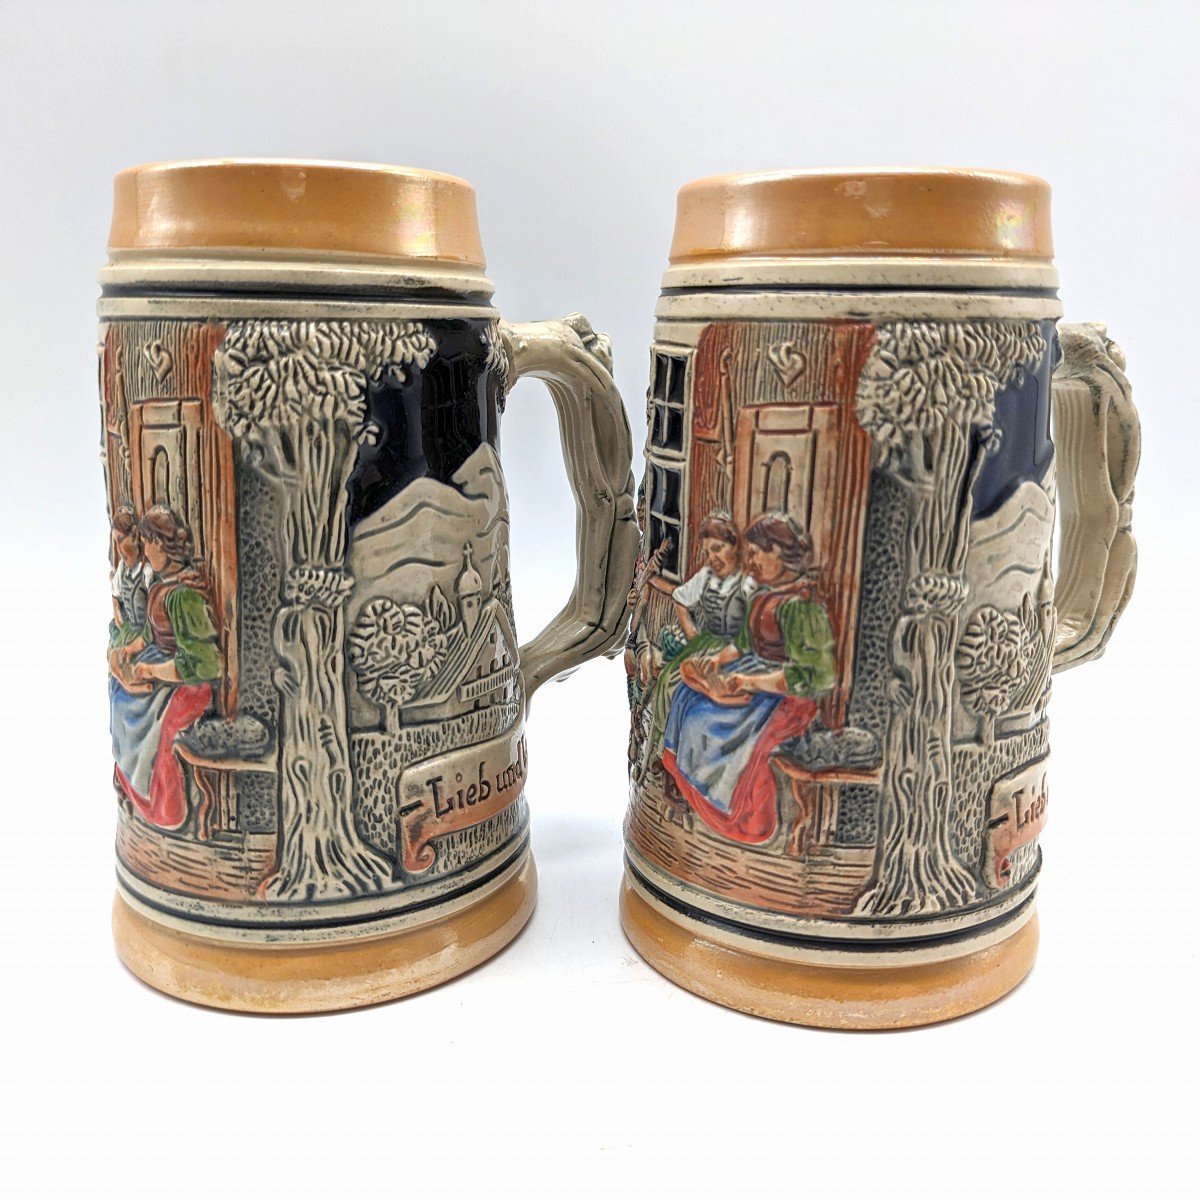 ビアマグ・陶器マグ・マグカップ・酒器・西ドイツ製・2個セット・No.230929-22・梱包サイズ80